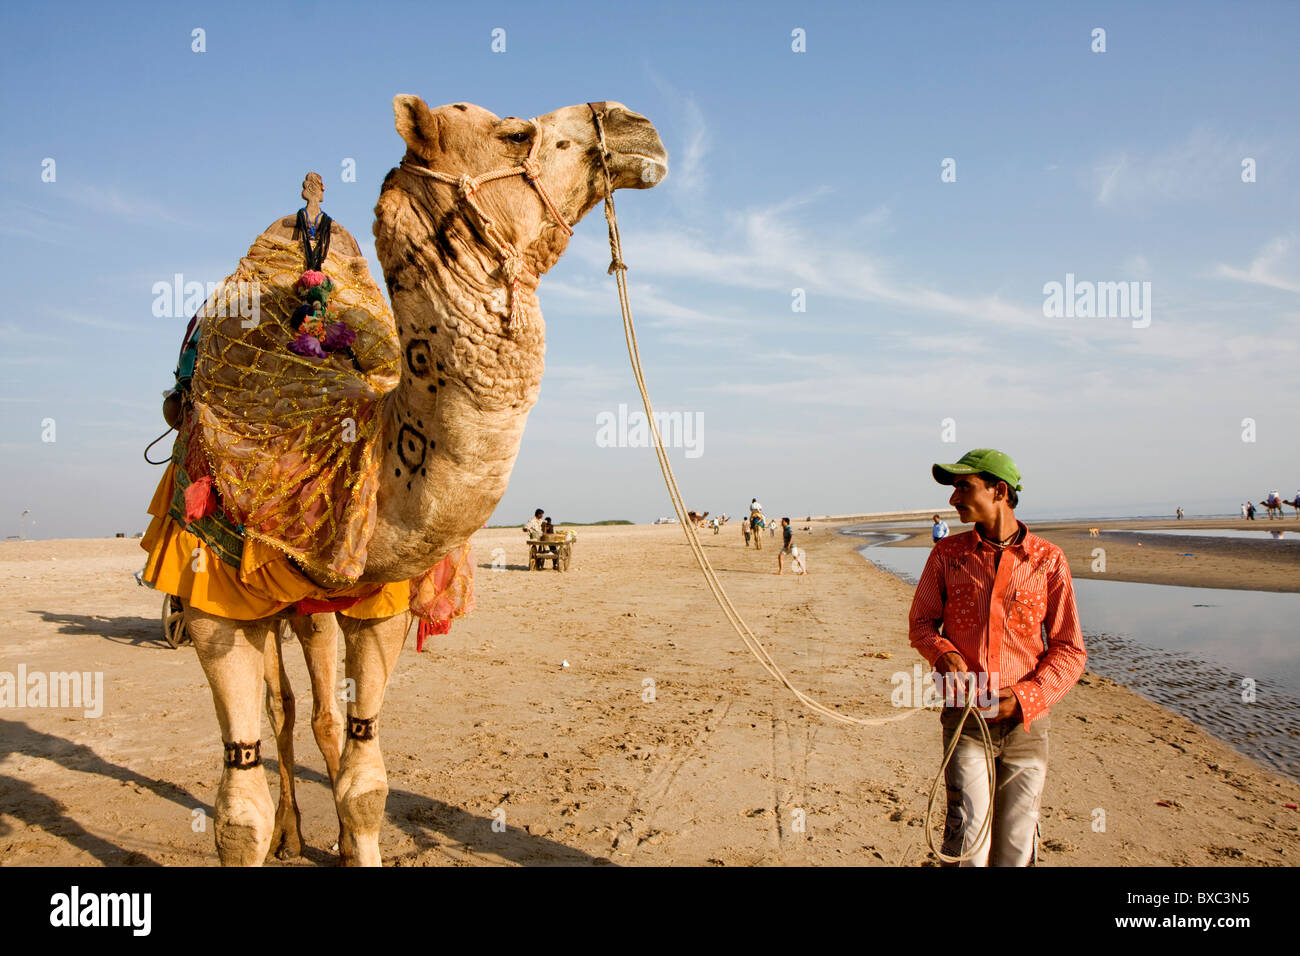 Un Indien à la recherche de son chameau, Mandvi, Gujarat, Inde Banque D'Images